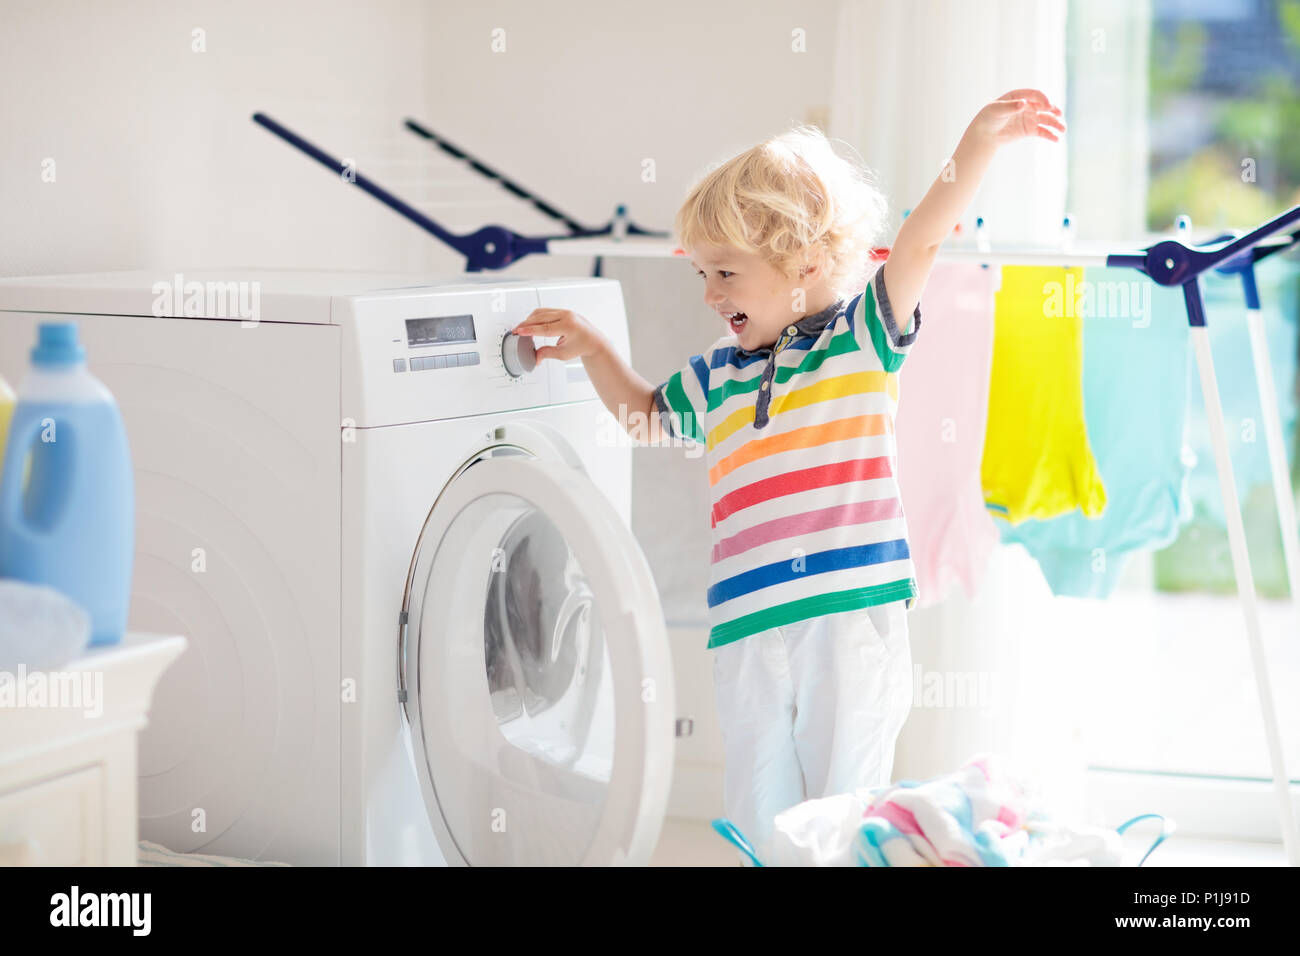 Kind in der Waschküche mit Waschmaschine und Wäschetrockner. Kind hilft mit  Familie Chores. Moderne Haushaltsgeräte und Waschmittel in Weiß su  Stockfotografie - Alamy